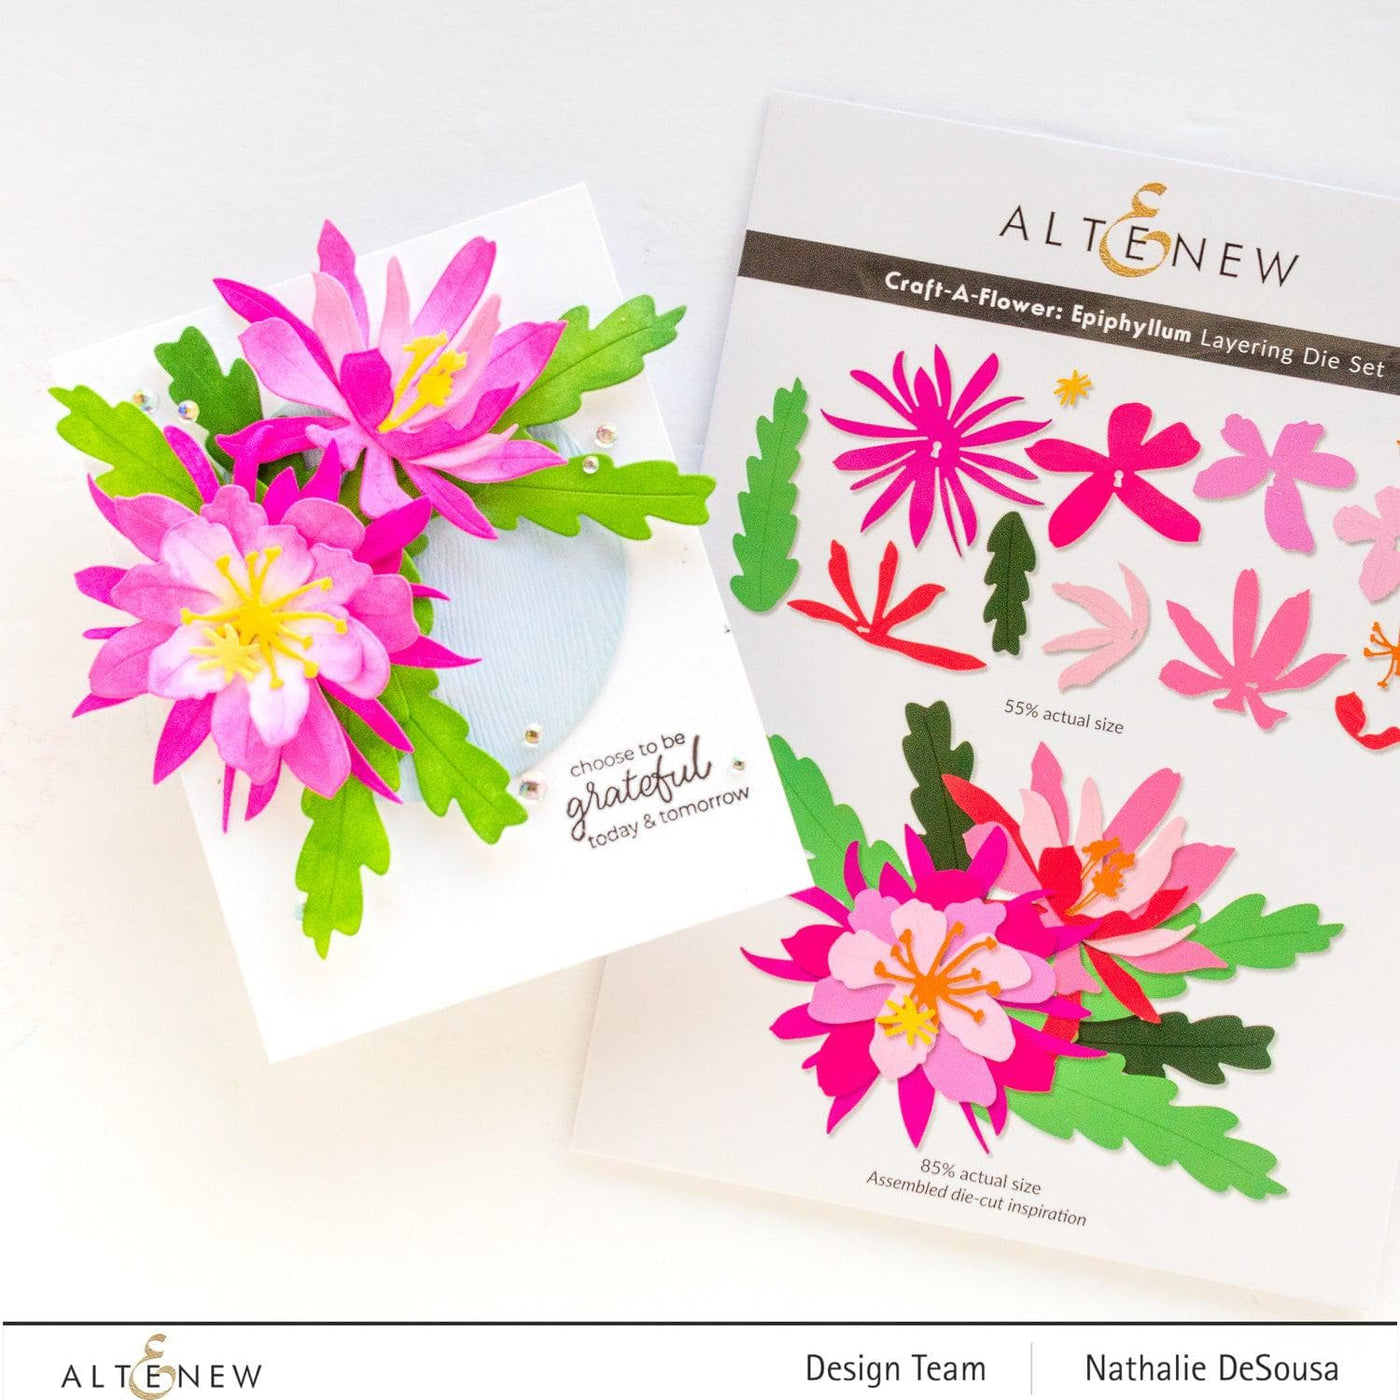 Altenew - Dies - Craft-A-Flower: Saffron Layering